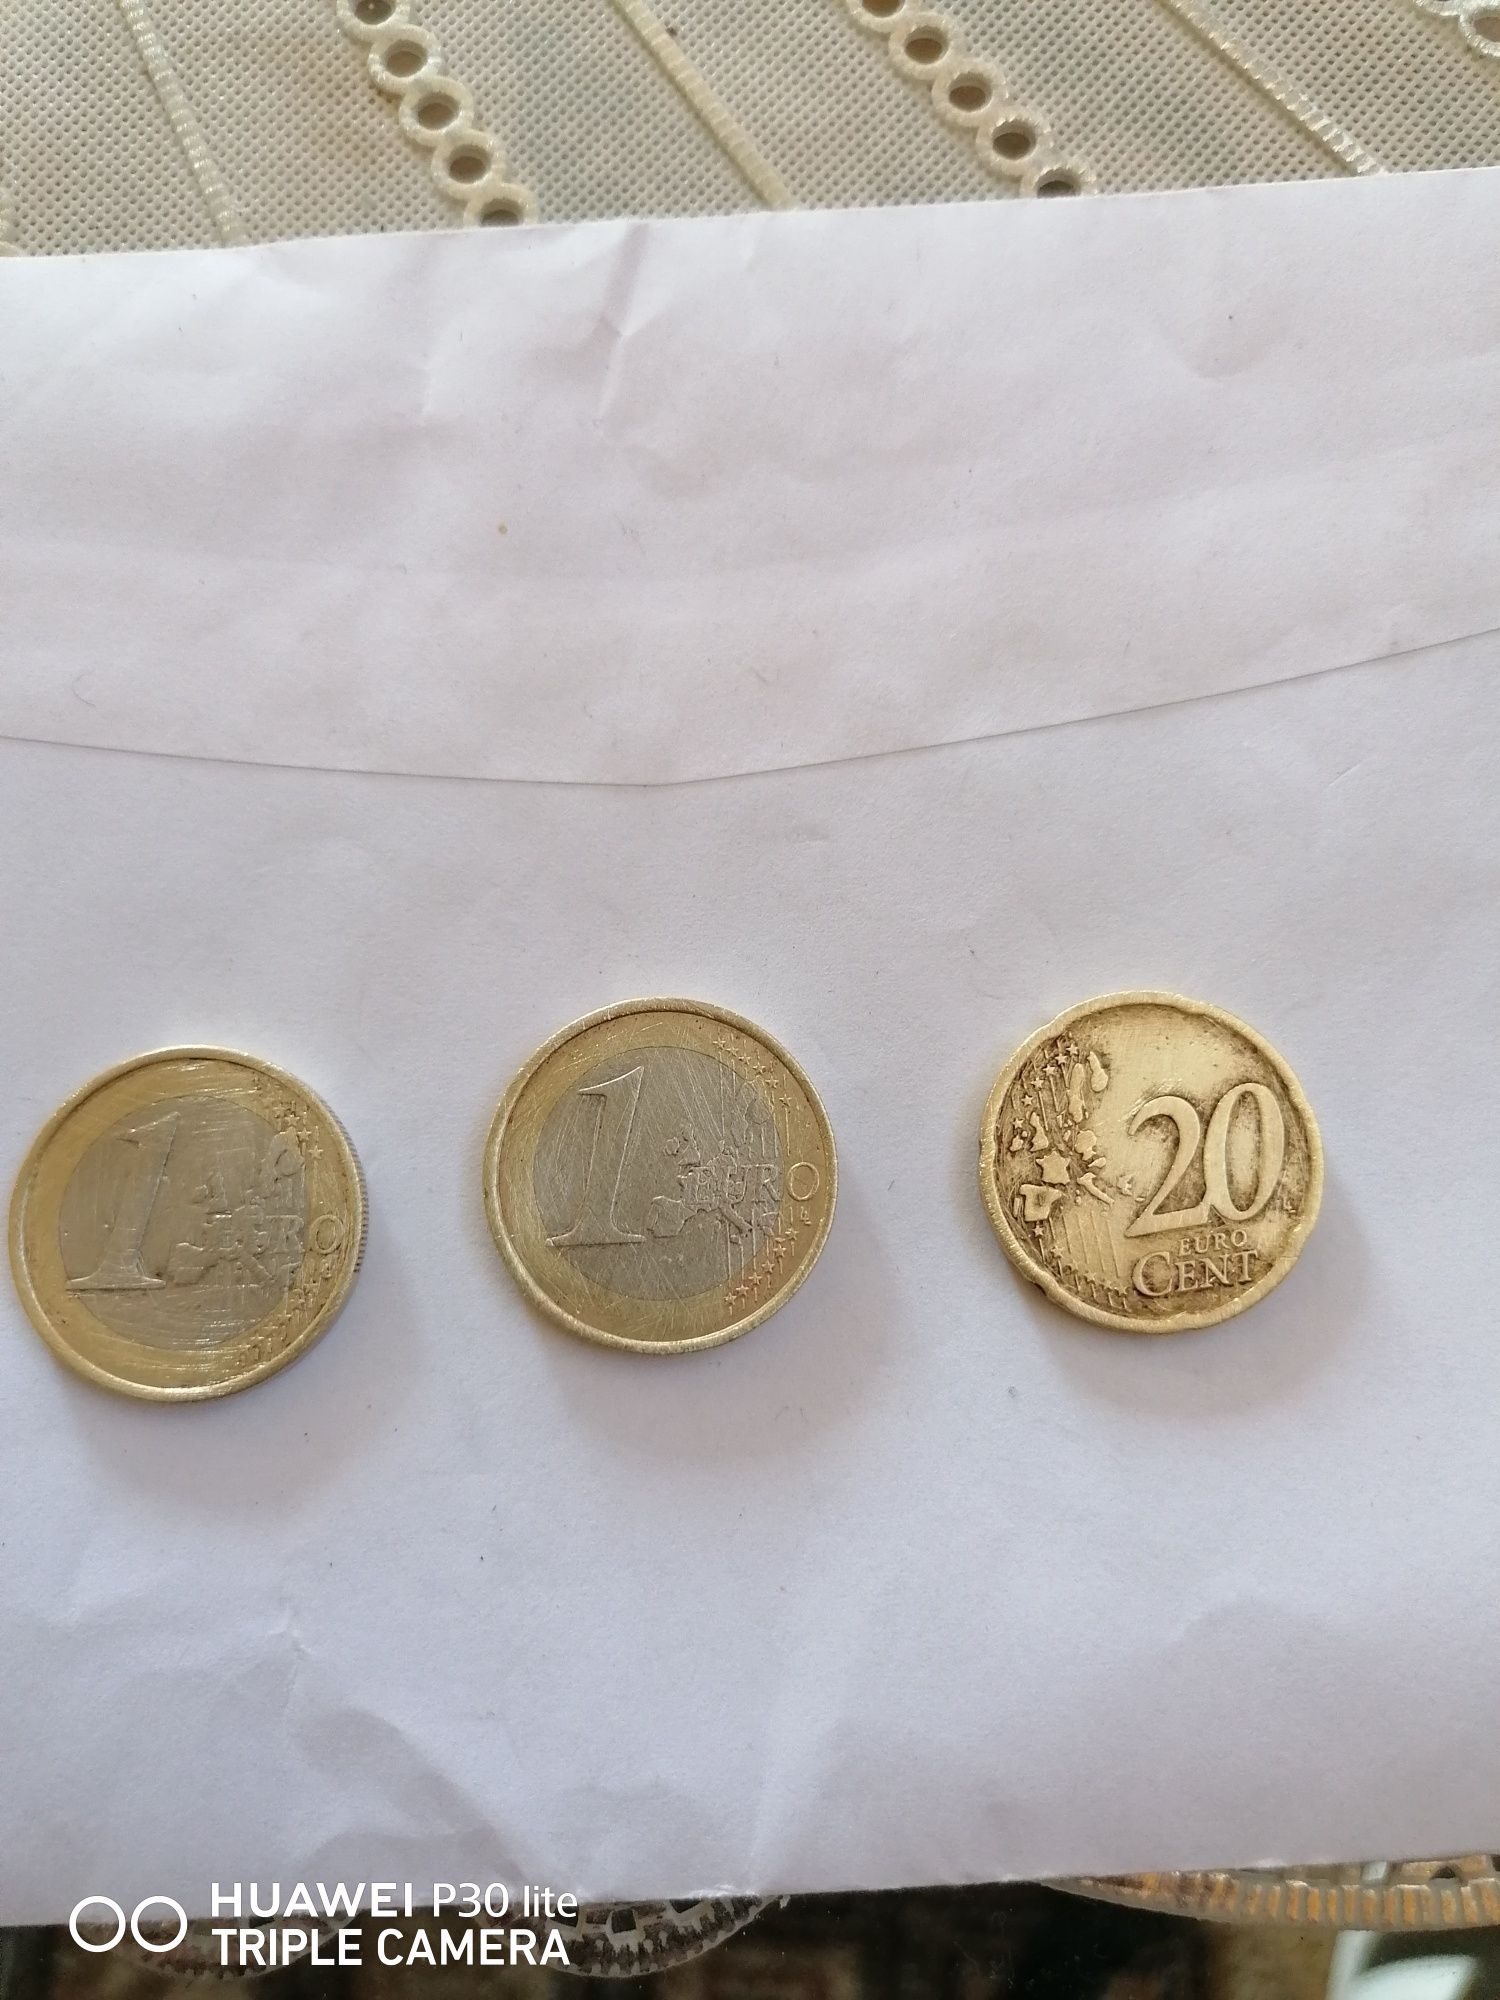 Monede rare de1 euro 1999 2002 2000€bucata